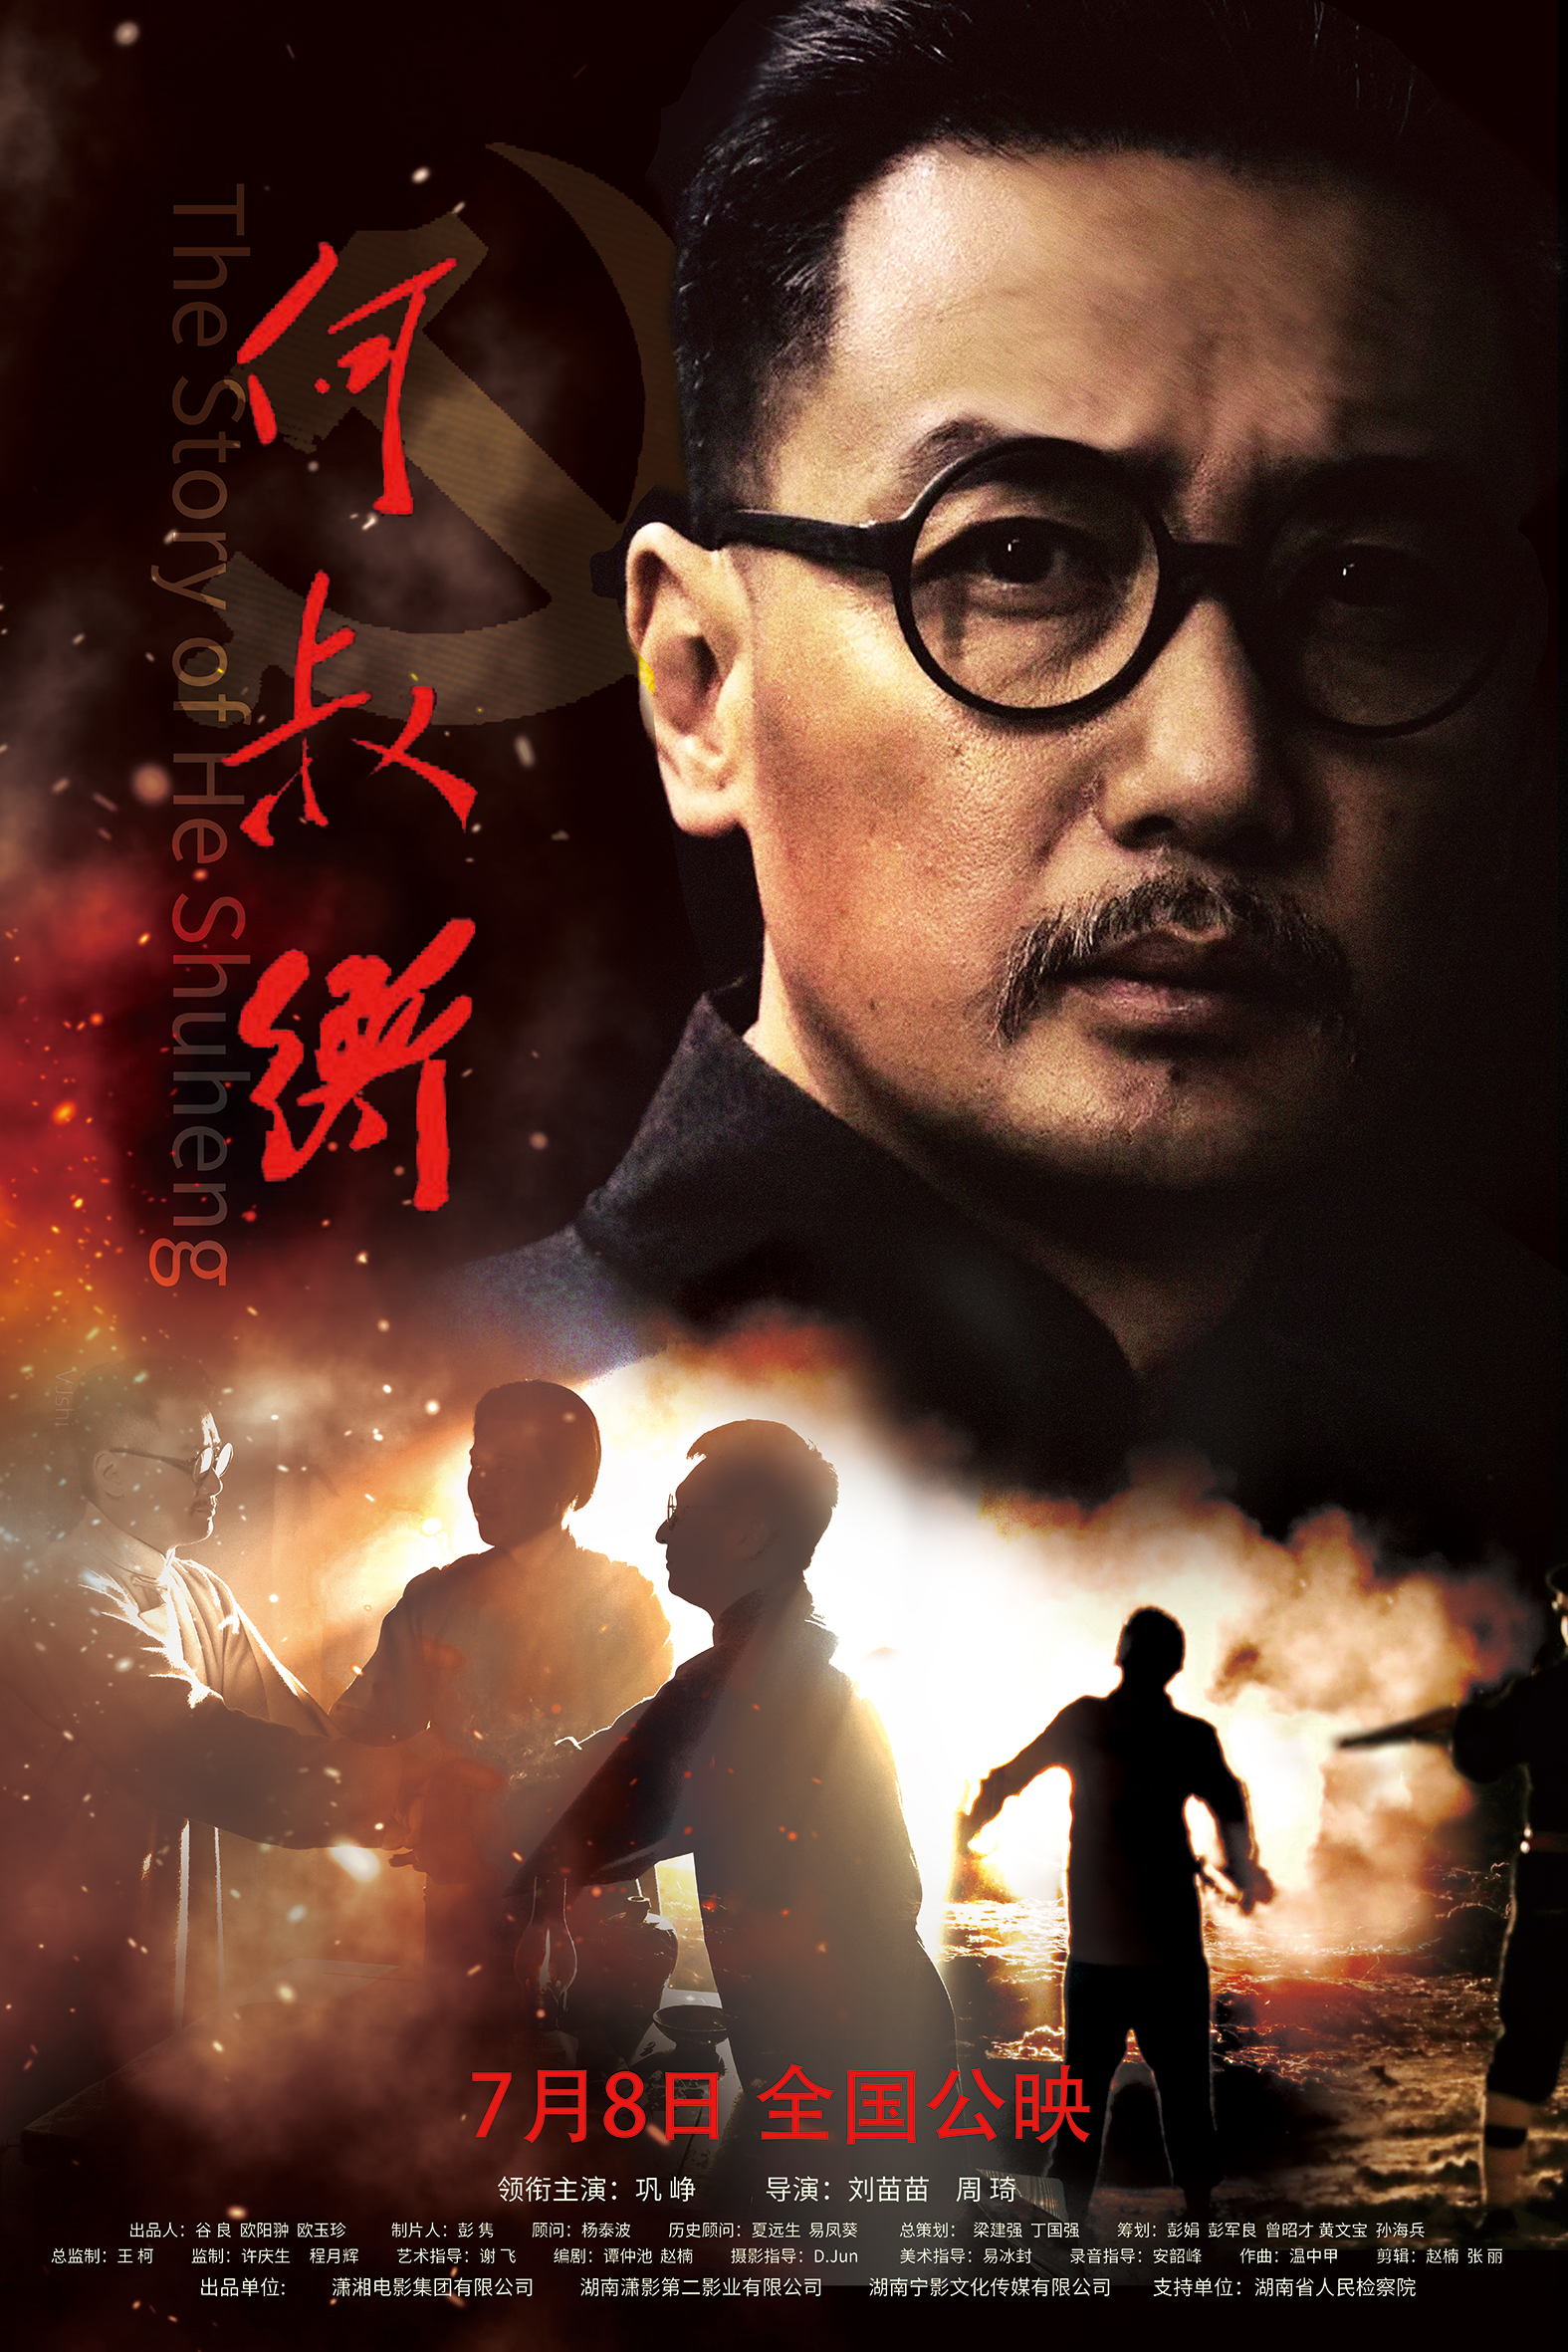 何叔衡 - The Story of He Shuheng